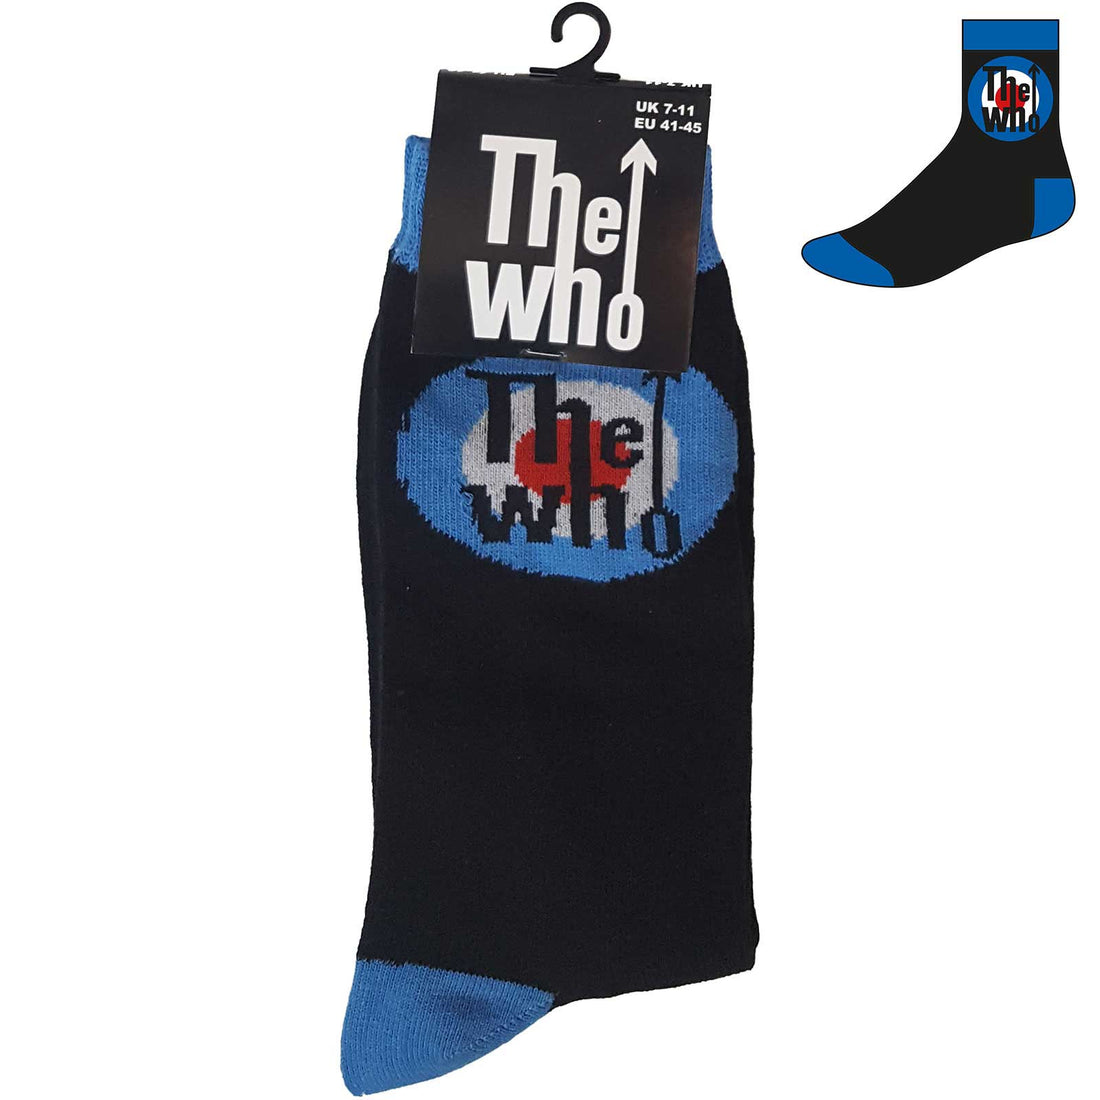 The Who Unisex Ankle Socks: Target Logo (UK Size 7 - 11)